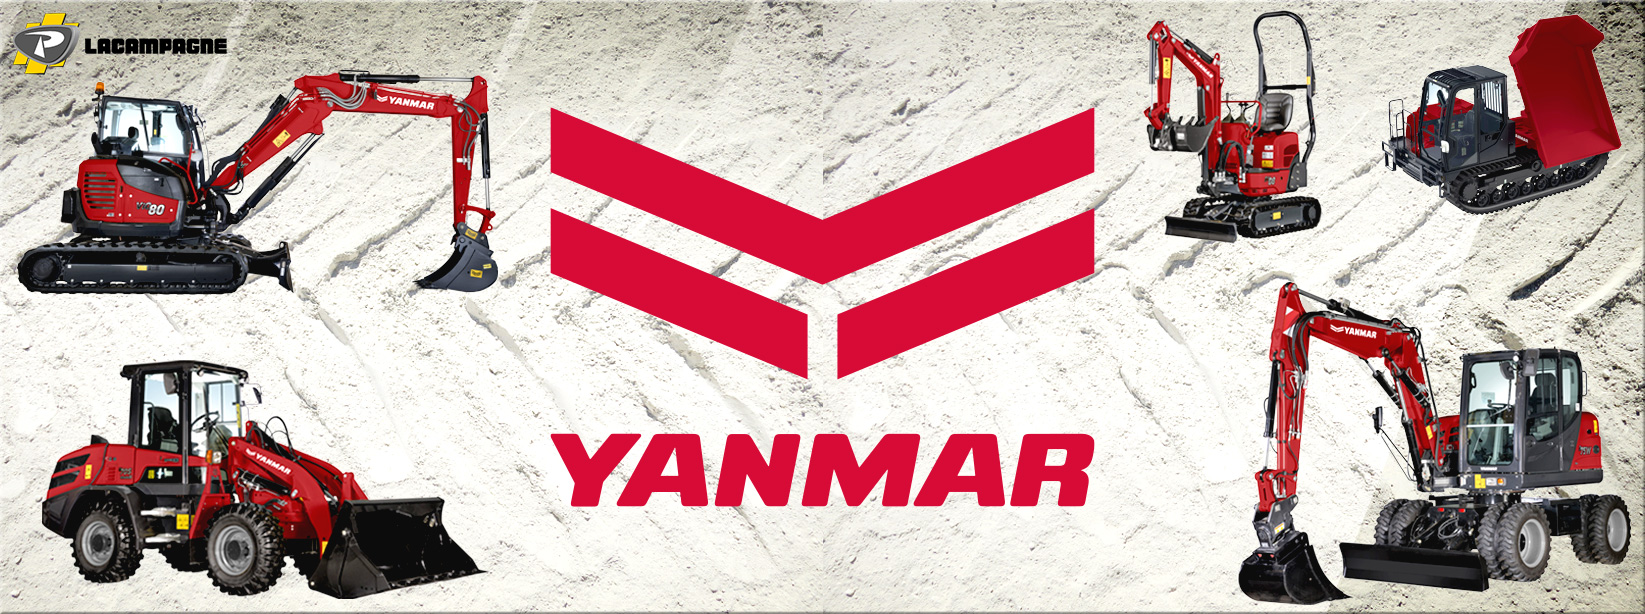 Matériels Yanmar distribués : Mini pelles, Midi pelles, Carriers, Chargeuses et Pelles sur pneus - Groupe PAYANT